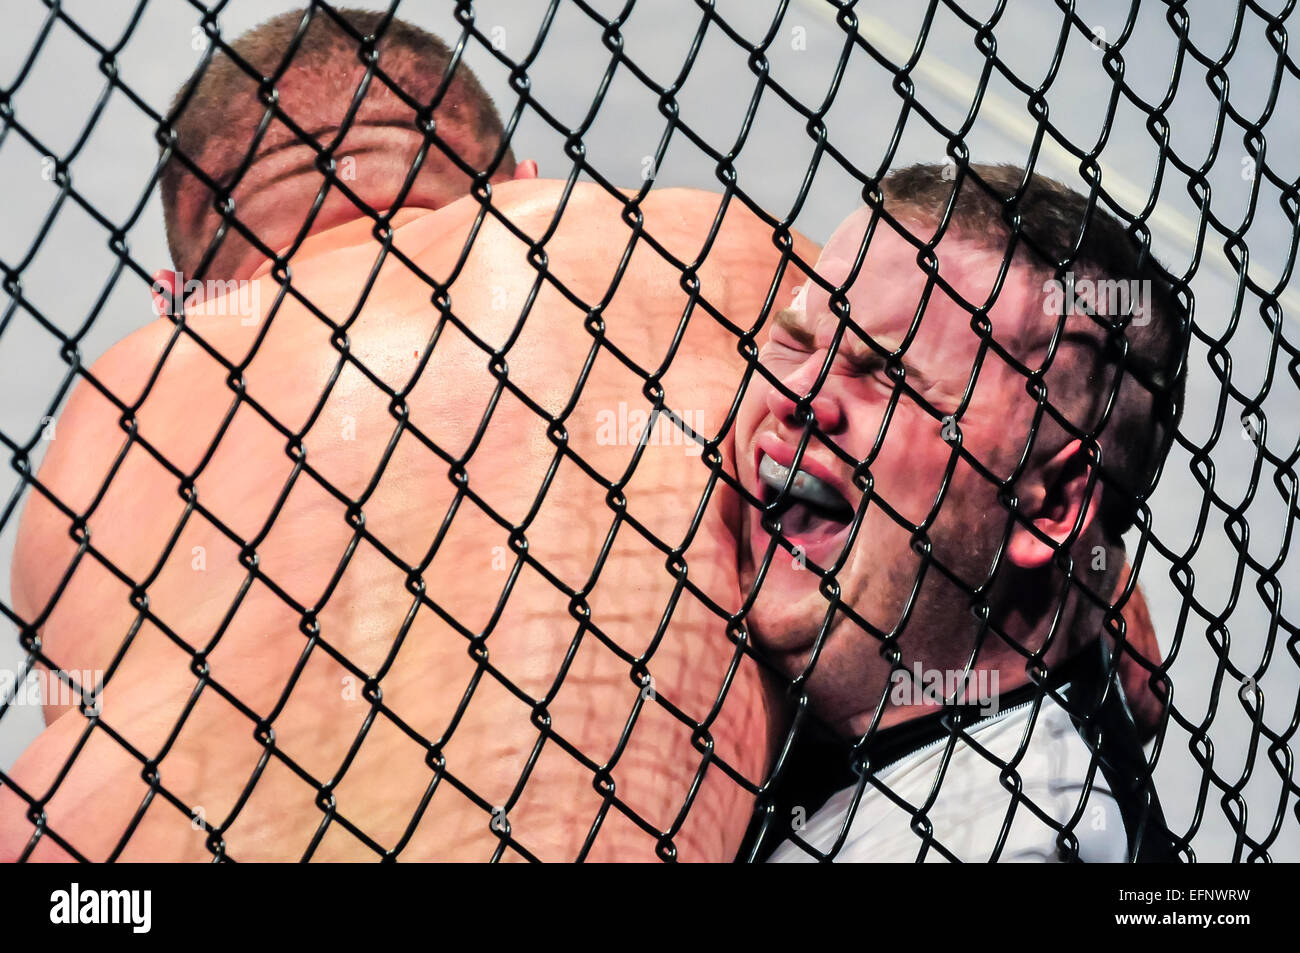 MMA fighter hurle de douleur après avoir été coincé entre la cage et son adversaire, et son adversaire a lui dans un armlock. Banque D'Images